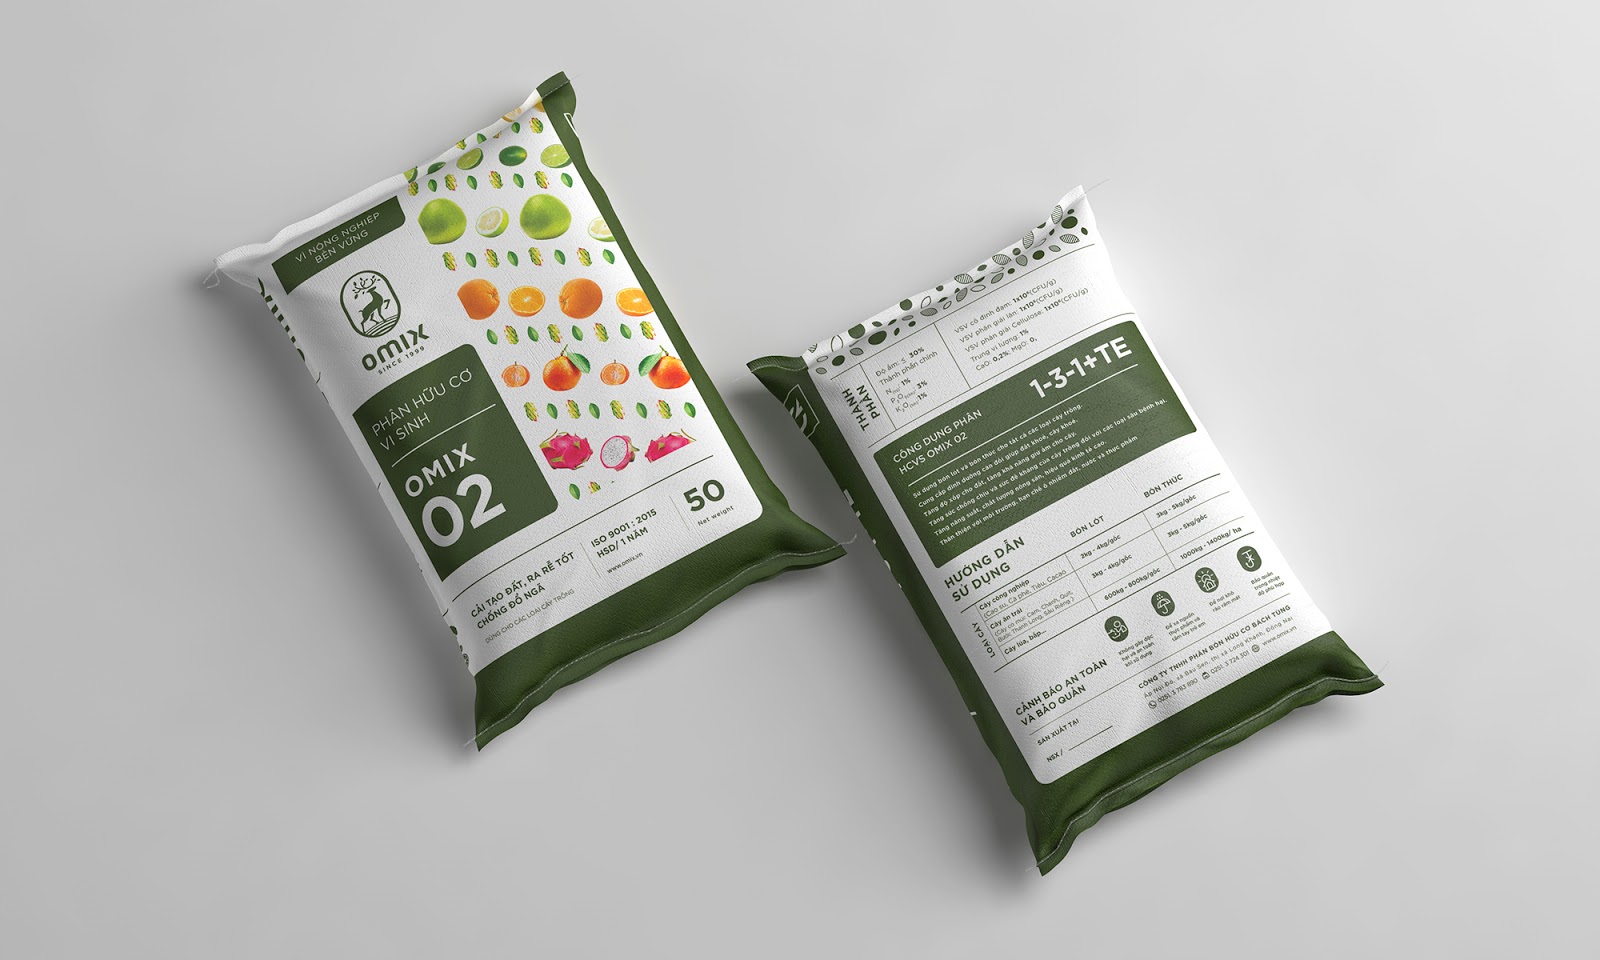 肥料包装设计西安oe欧亿体育app官方下载
品牌包装设计